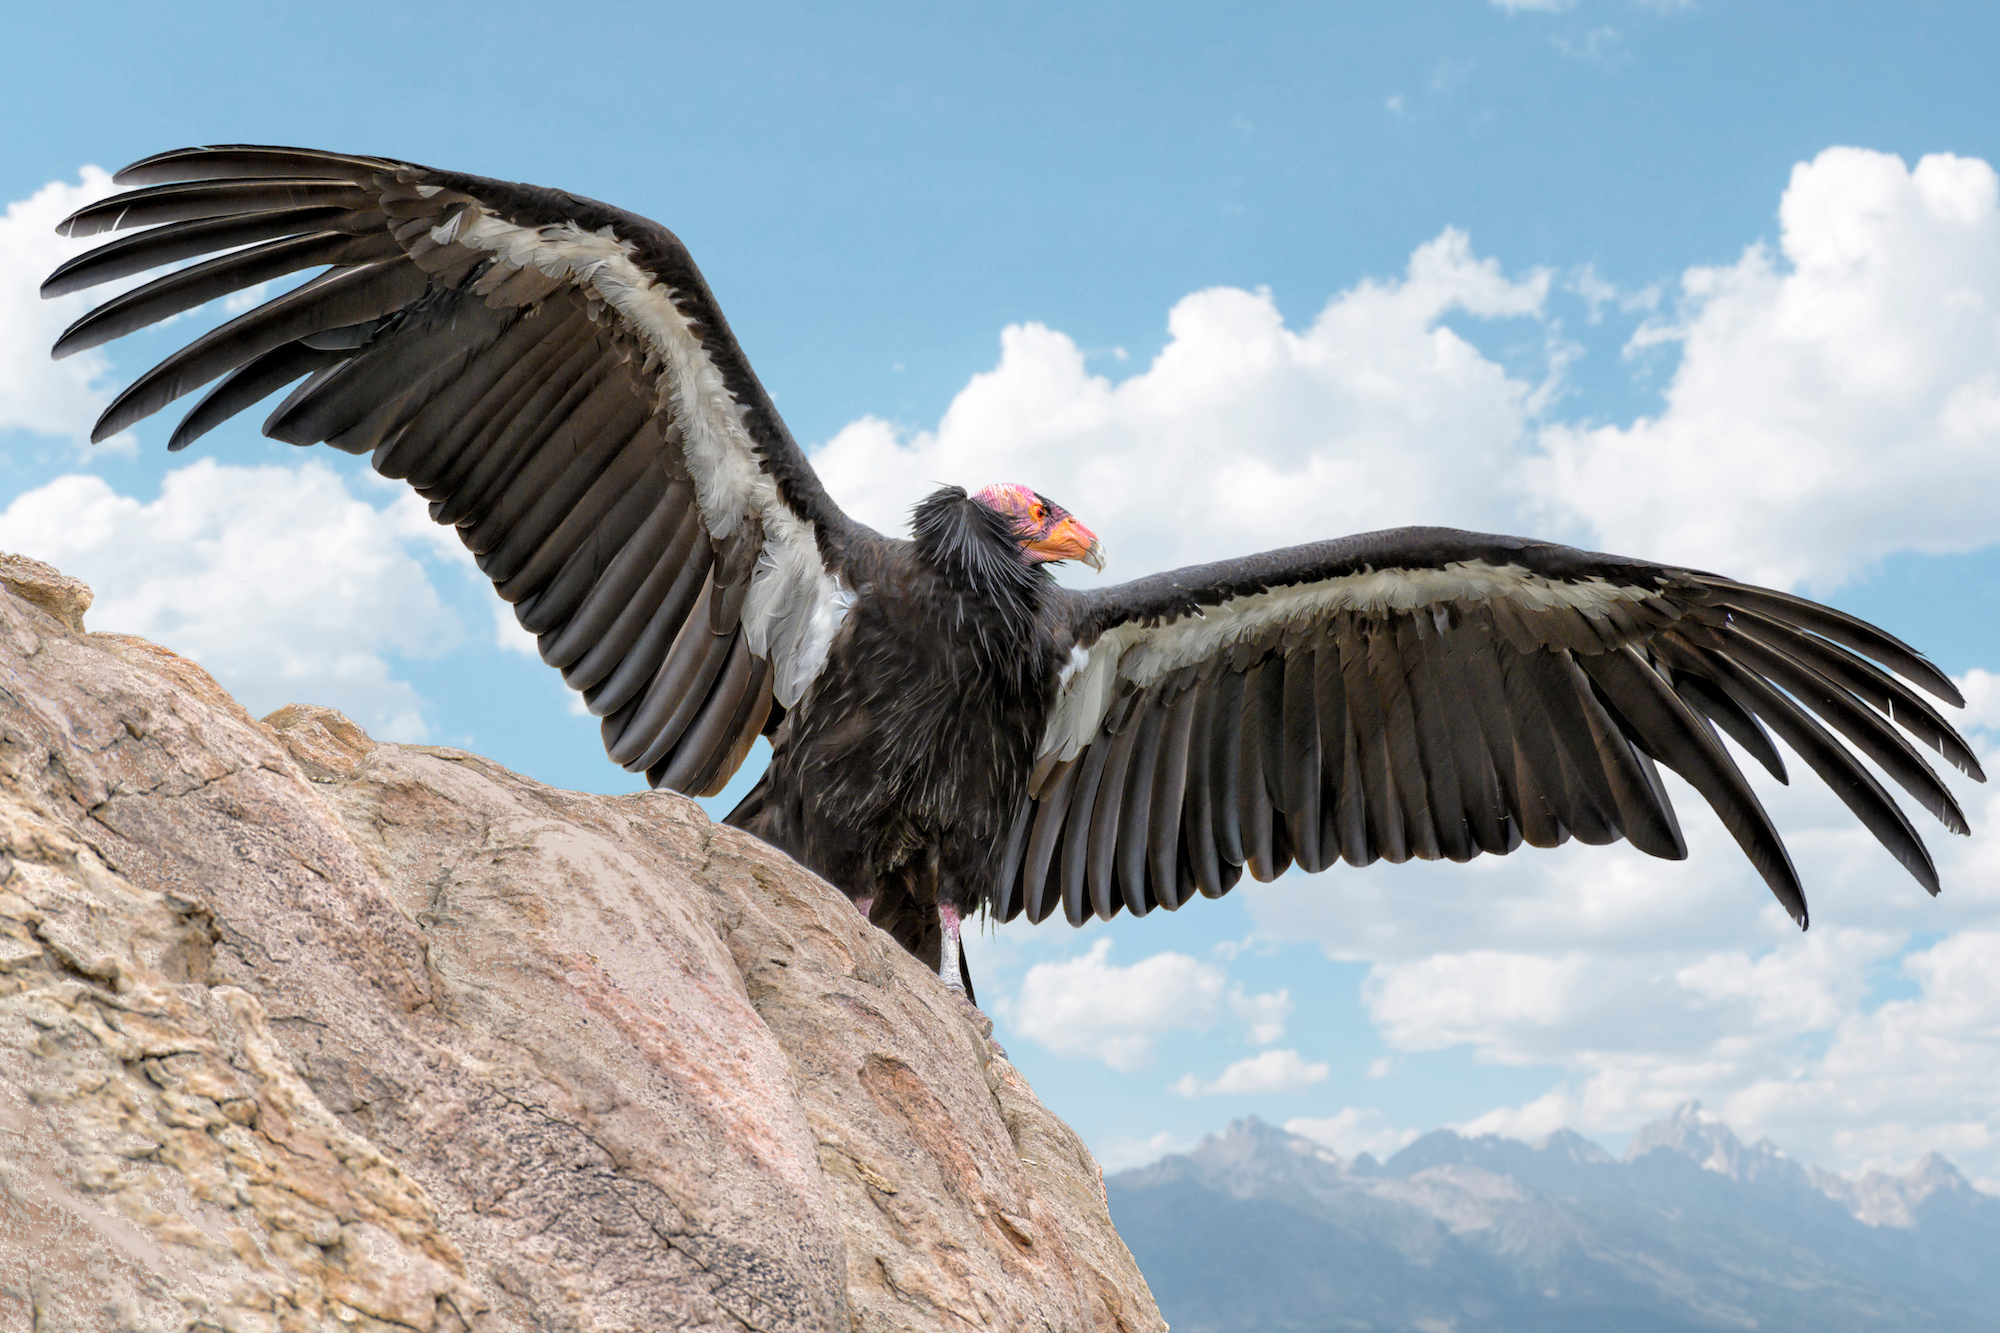 La tribu Yurok va relâcher quatre jeunes condors dans la nature pour tenter de repeupler cette espèce disparue.